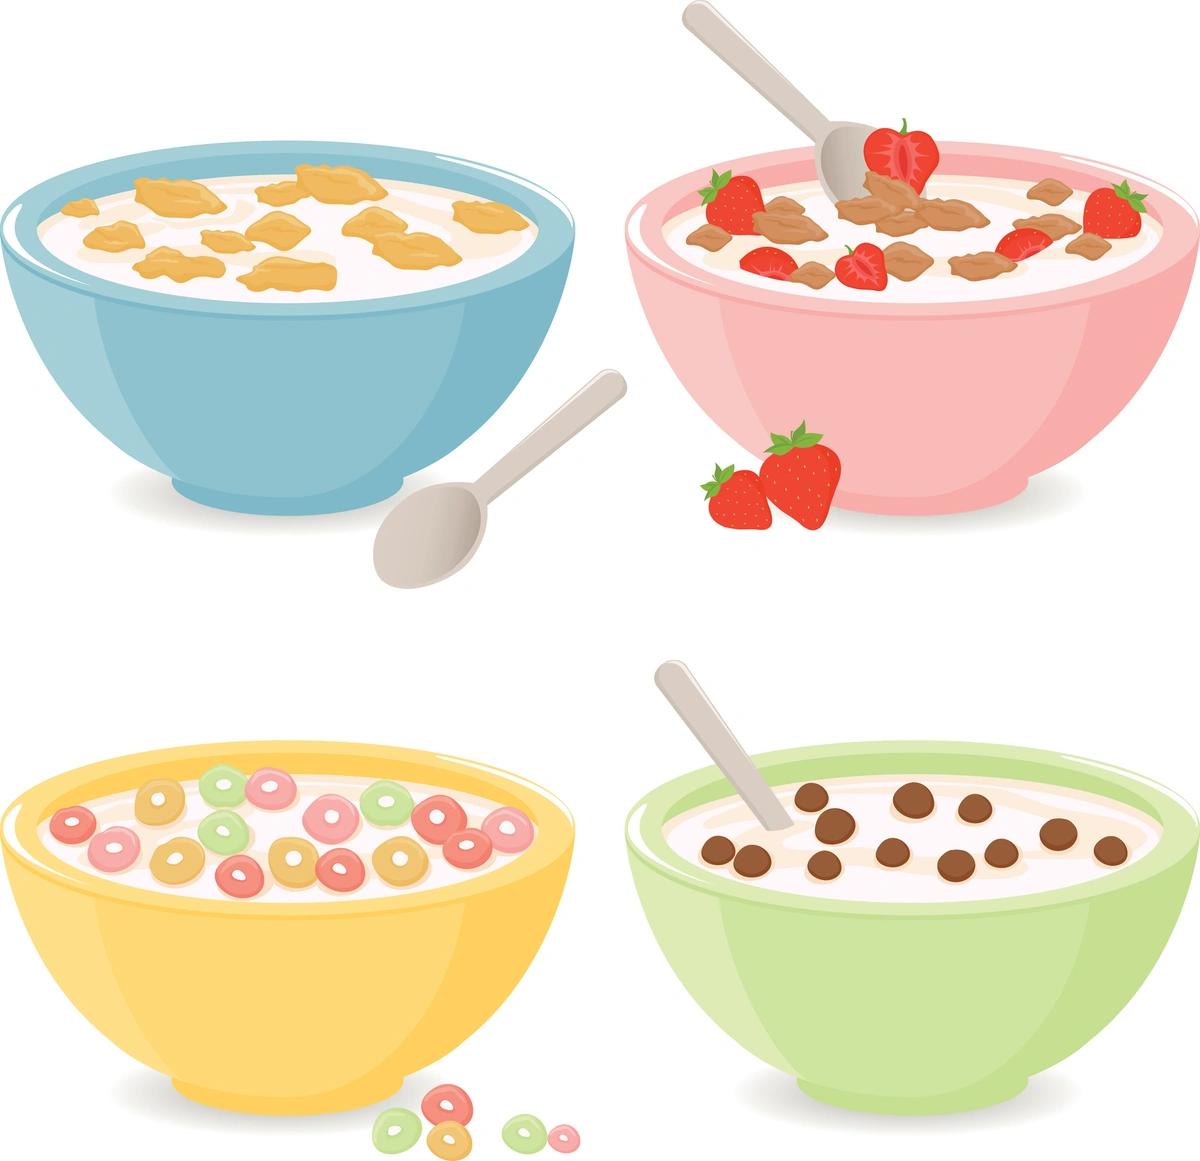 Illustration of cereal bowls